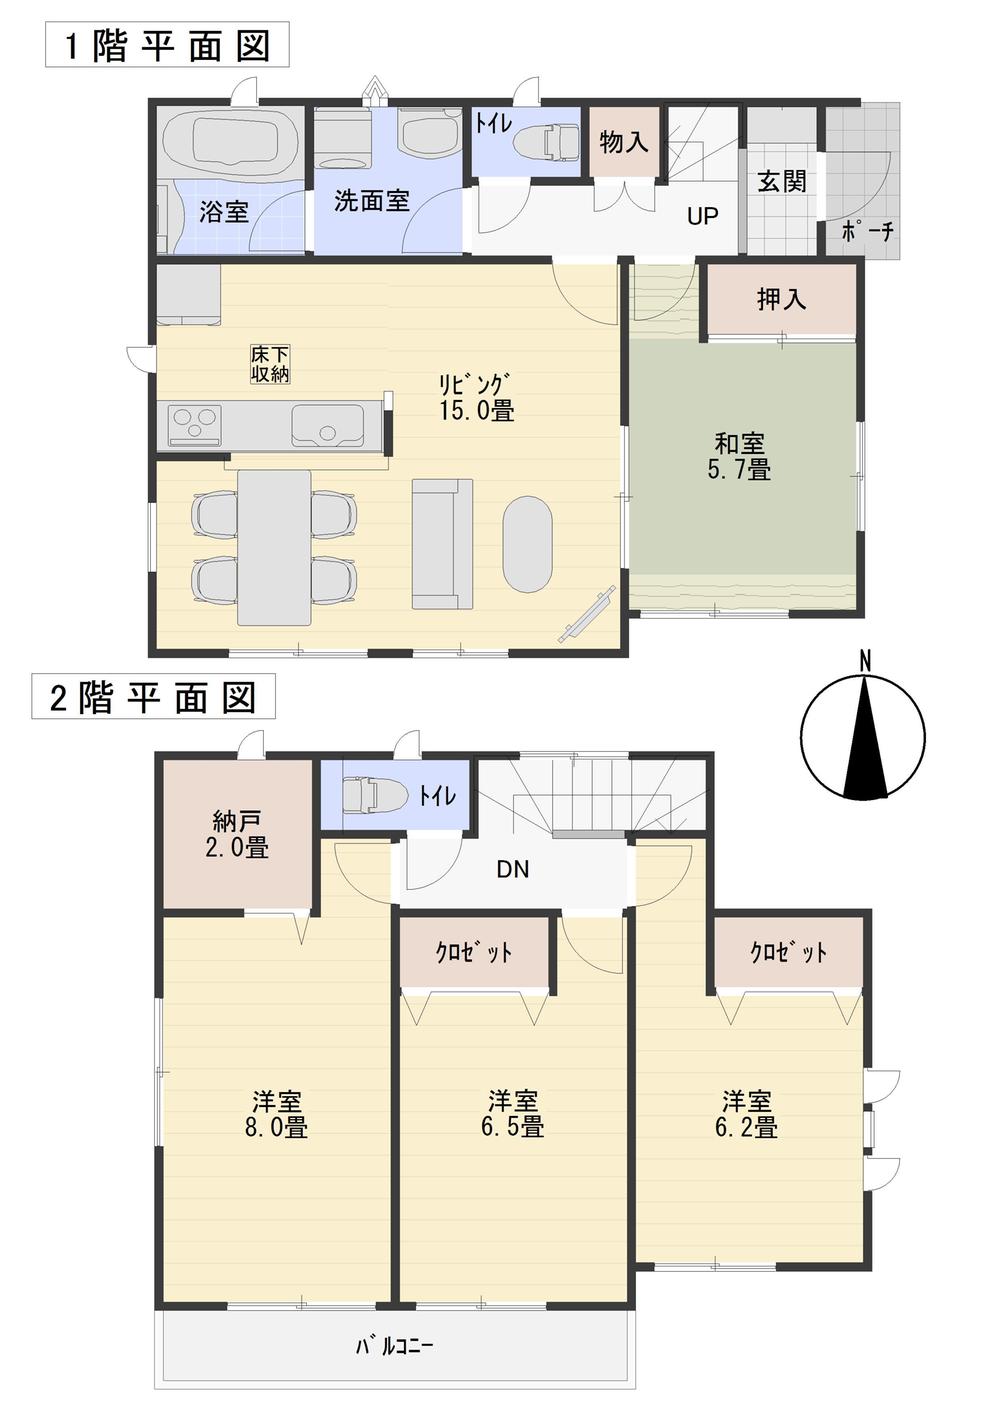 Floor plan. 15.9 million yen, 4LDK + S (storeroom), Land area 132.85 sq m , Building area 95.17 sq m 1 floor, The second floor is the floor plan. 